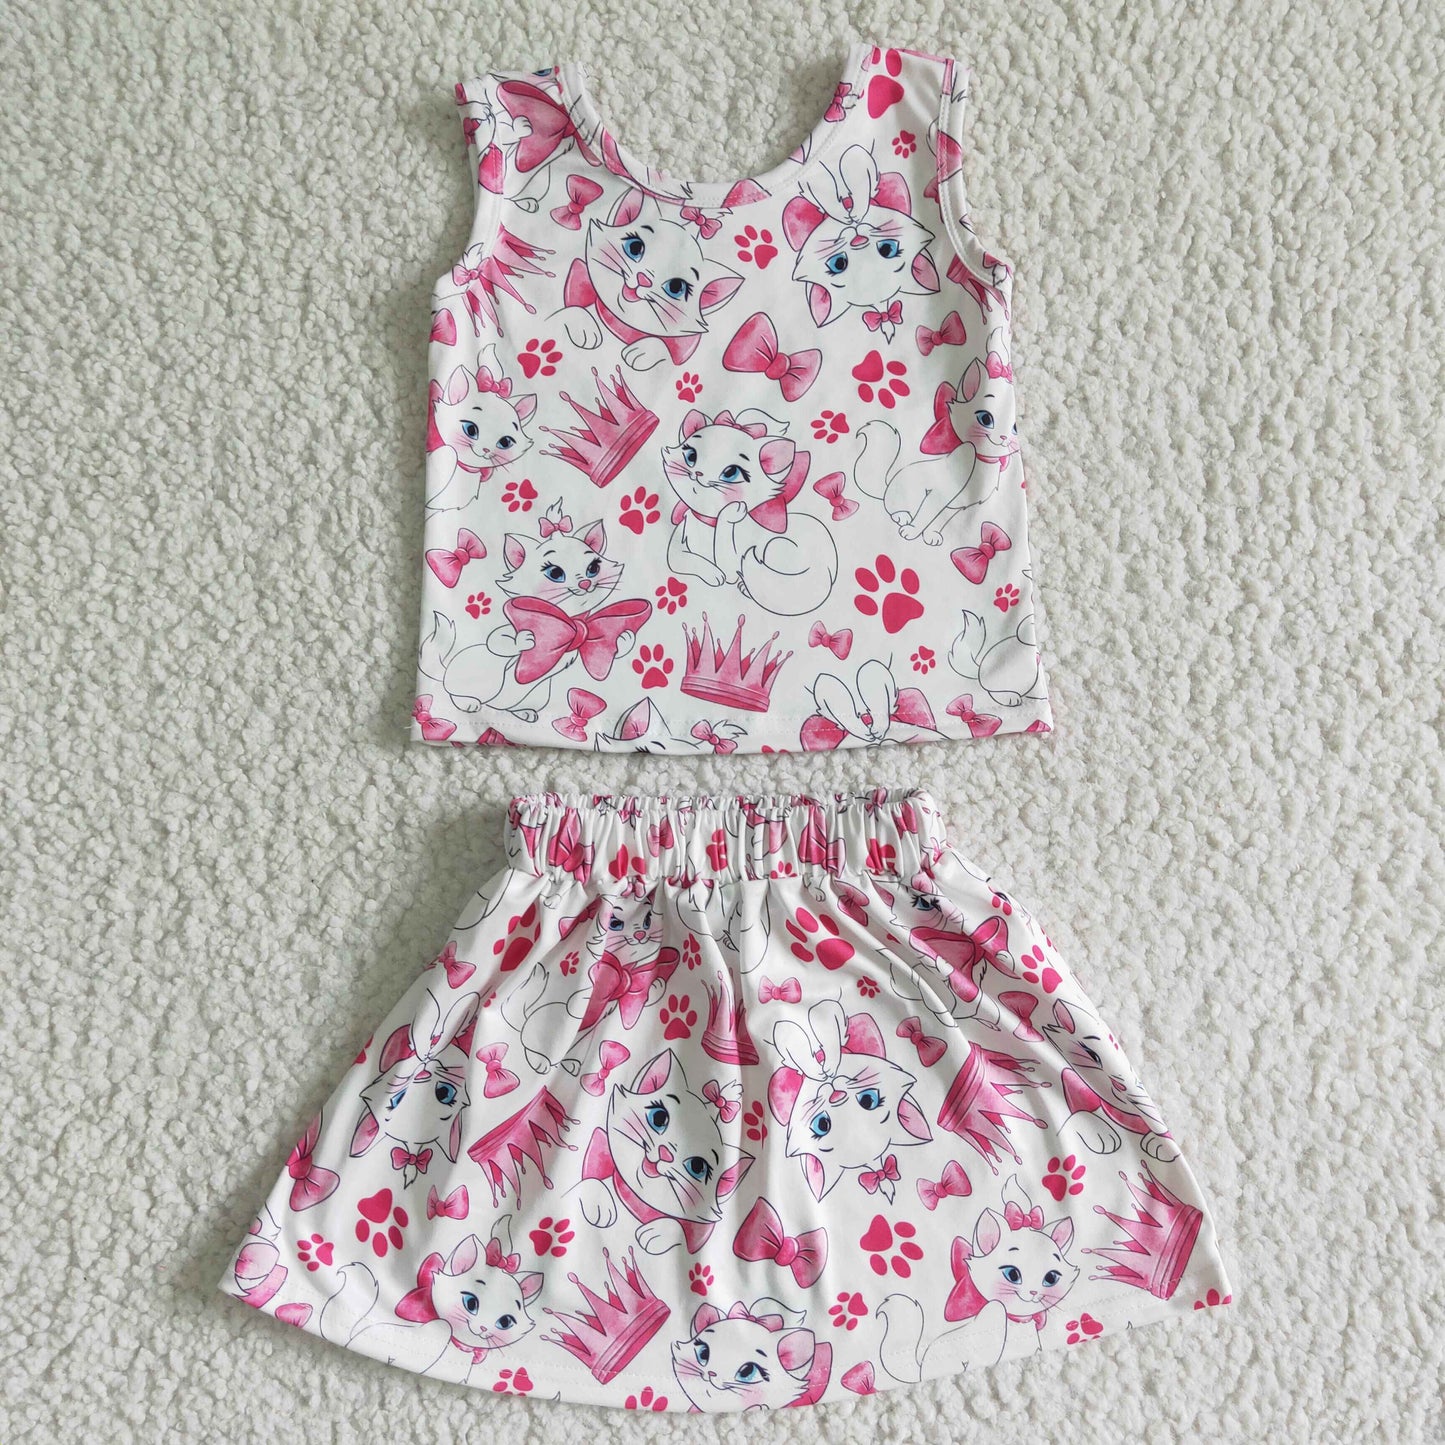 Cat print sleeveless shirt skirt baby girls clothing